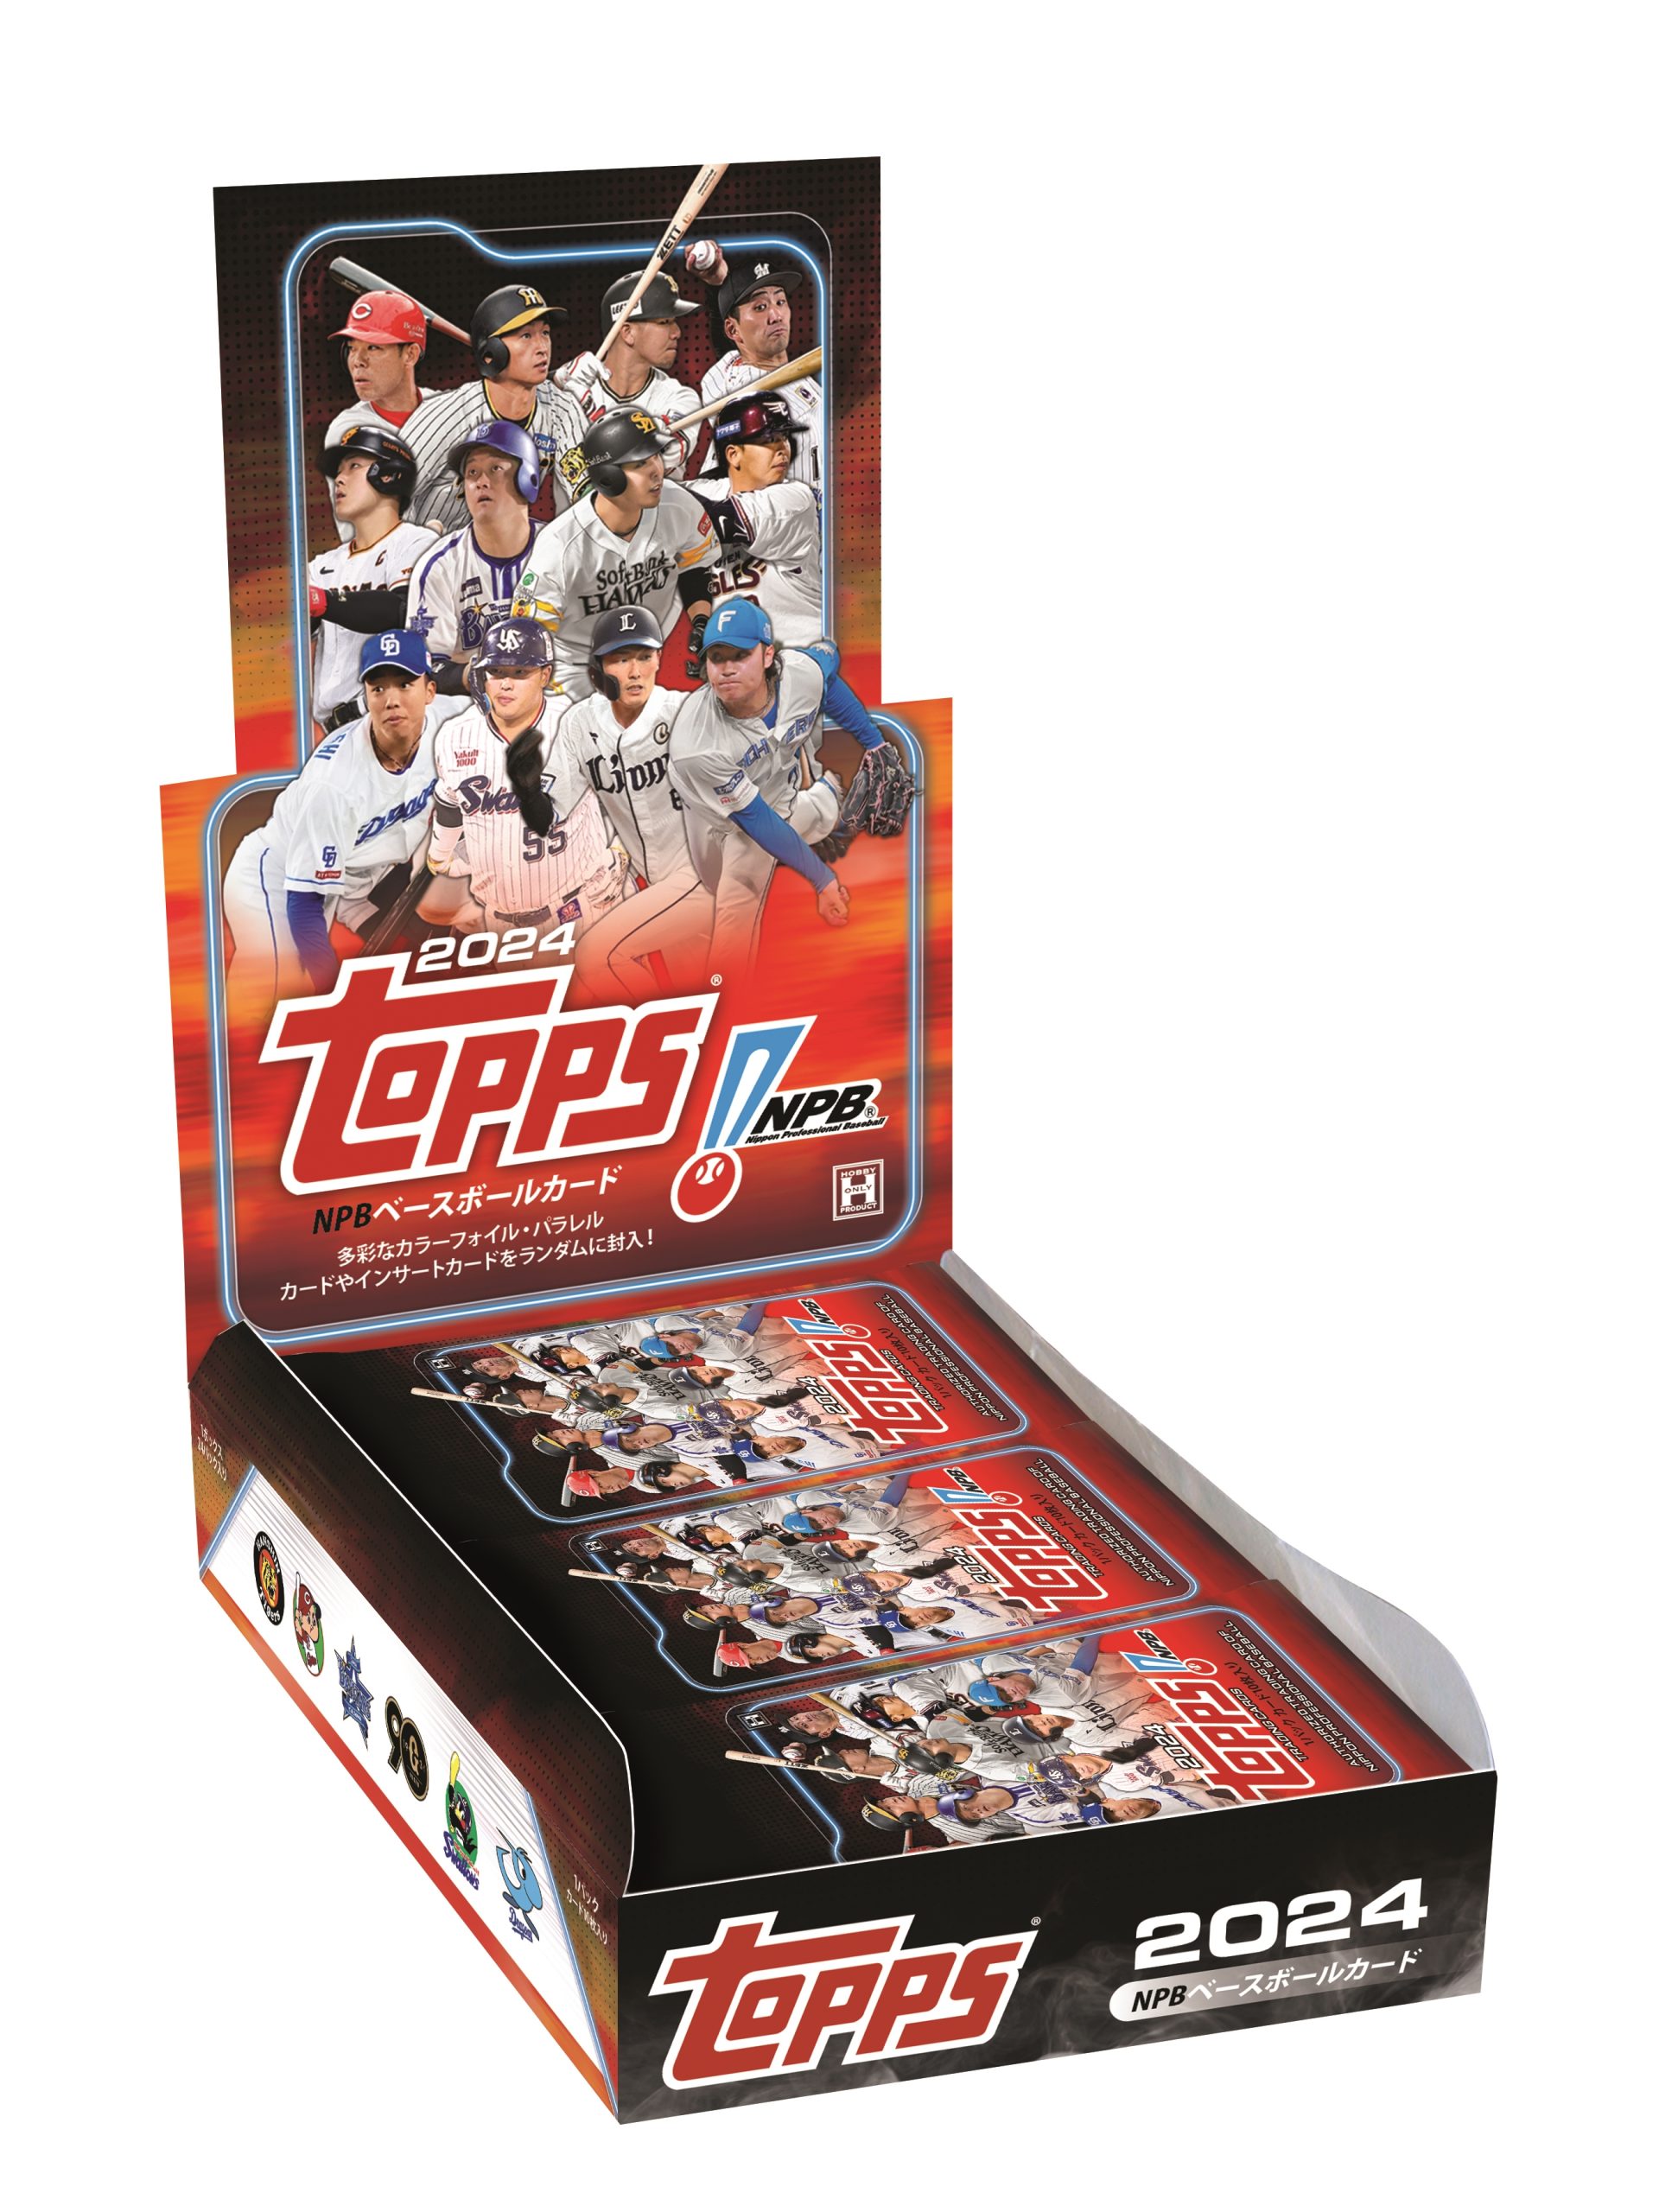 ⚾ 2024 TOPPS NPB ベースボールカード【製品情報】 | Trading Card 